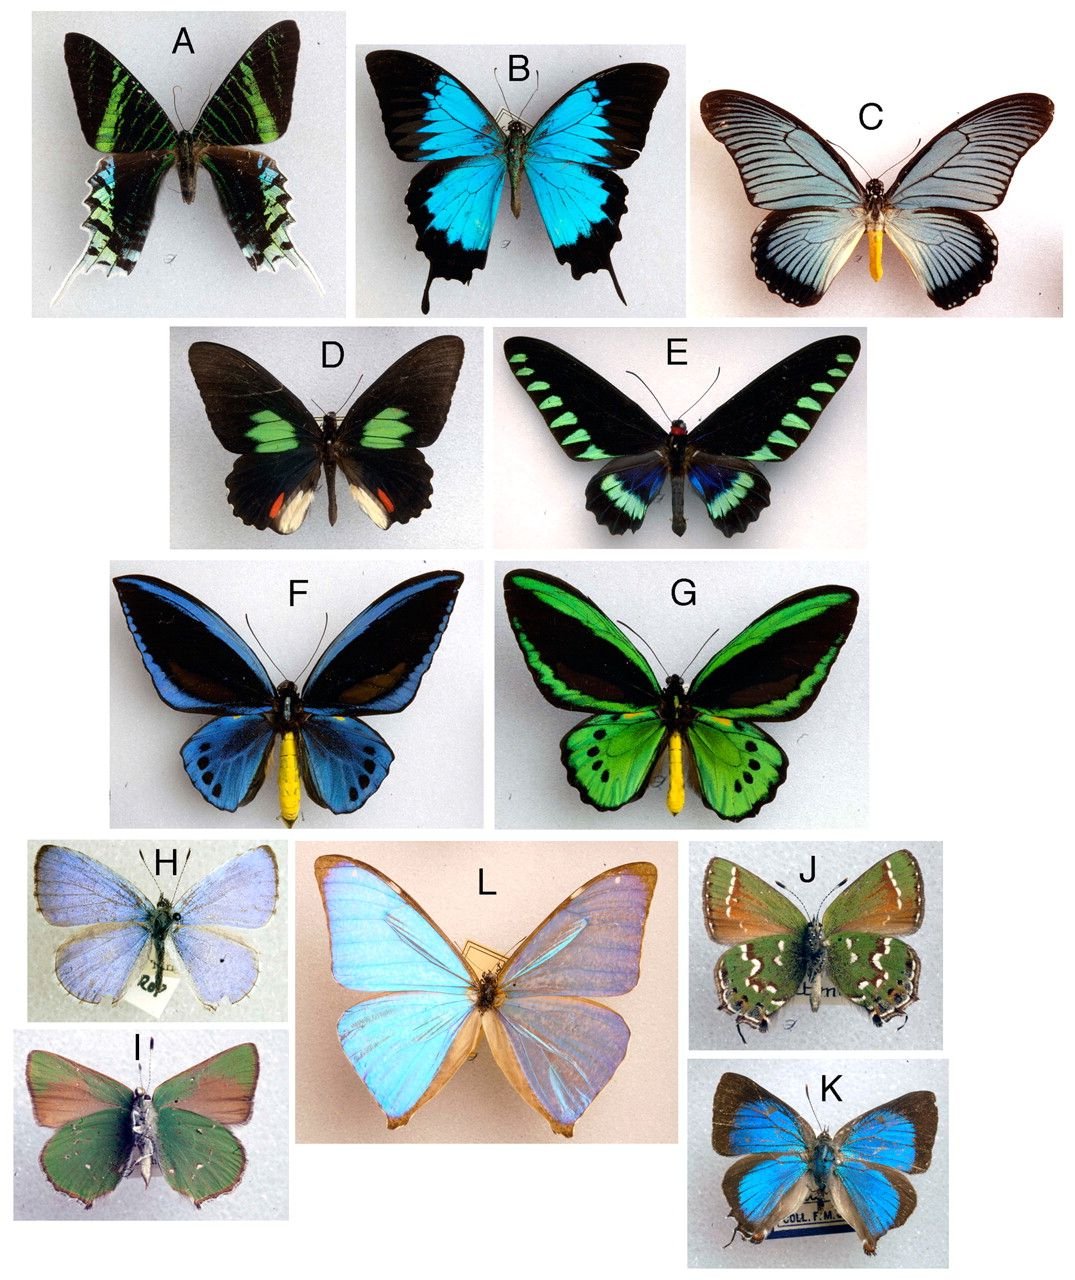 Название рисунков бабочки. Коллекция энтомологическая "семейство бабочек". Расцветки бабочек. Многообразие бабочек. Окраска бабочек.